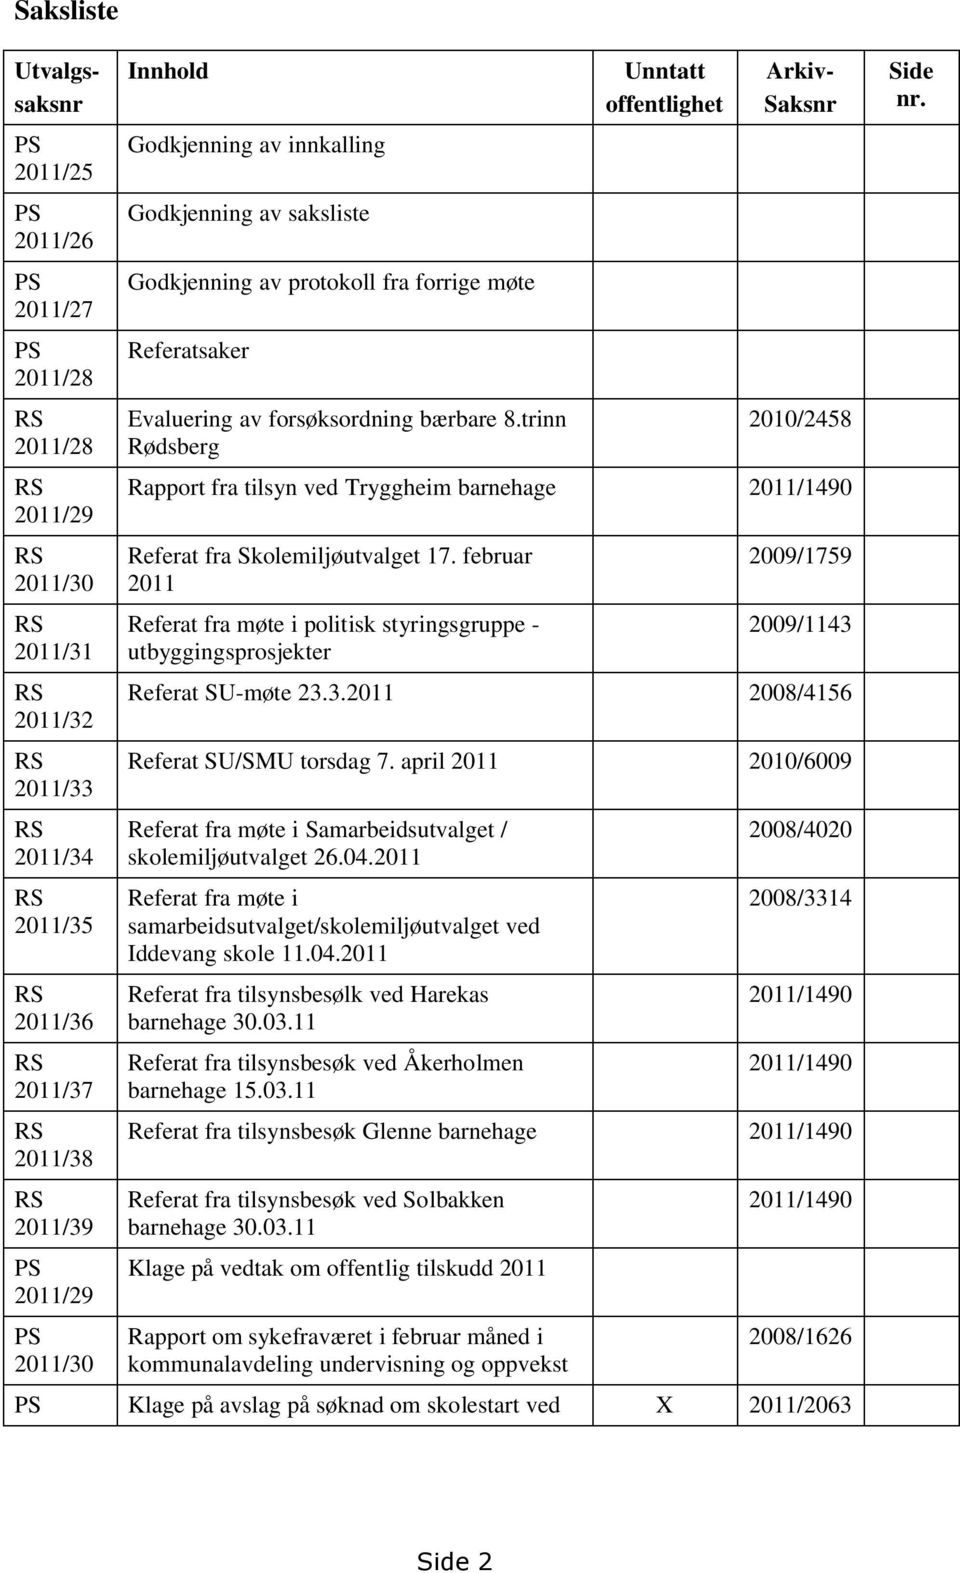 trinn Rødsberg Unntatt offentlighet Utvalgssaksnr Arkiv- Saksnr 2010/2458 Rapport fra tilsyn ved Tryggheim barnehage 2011/1490 Referat fra Skolemiljøutvalget 17.